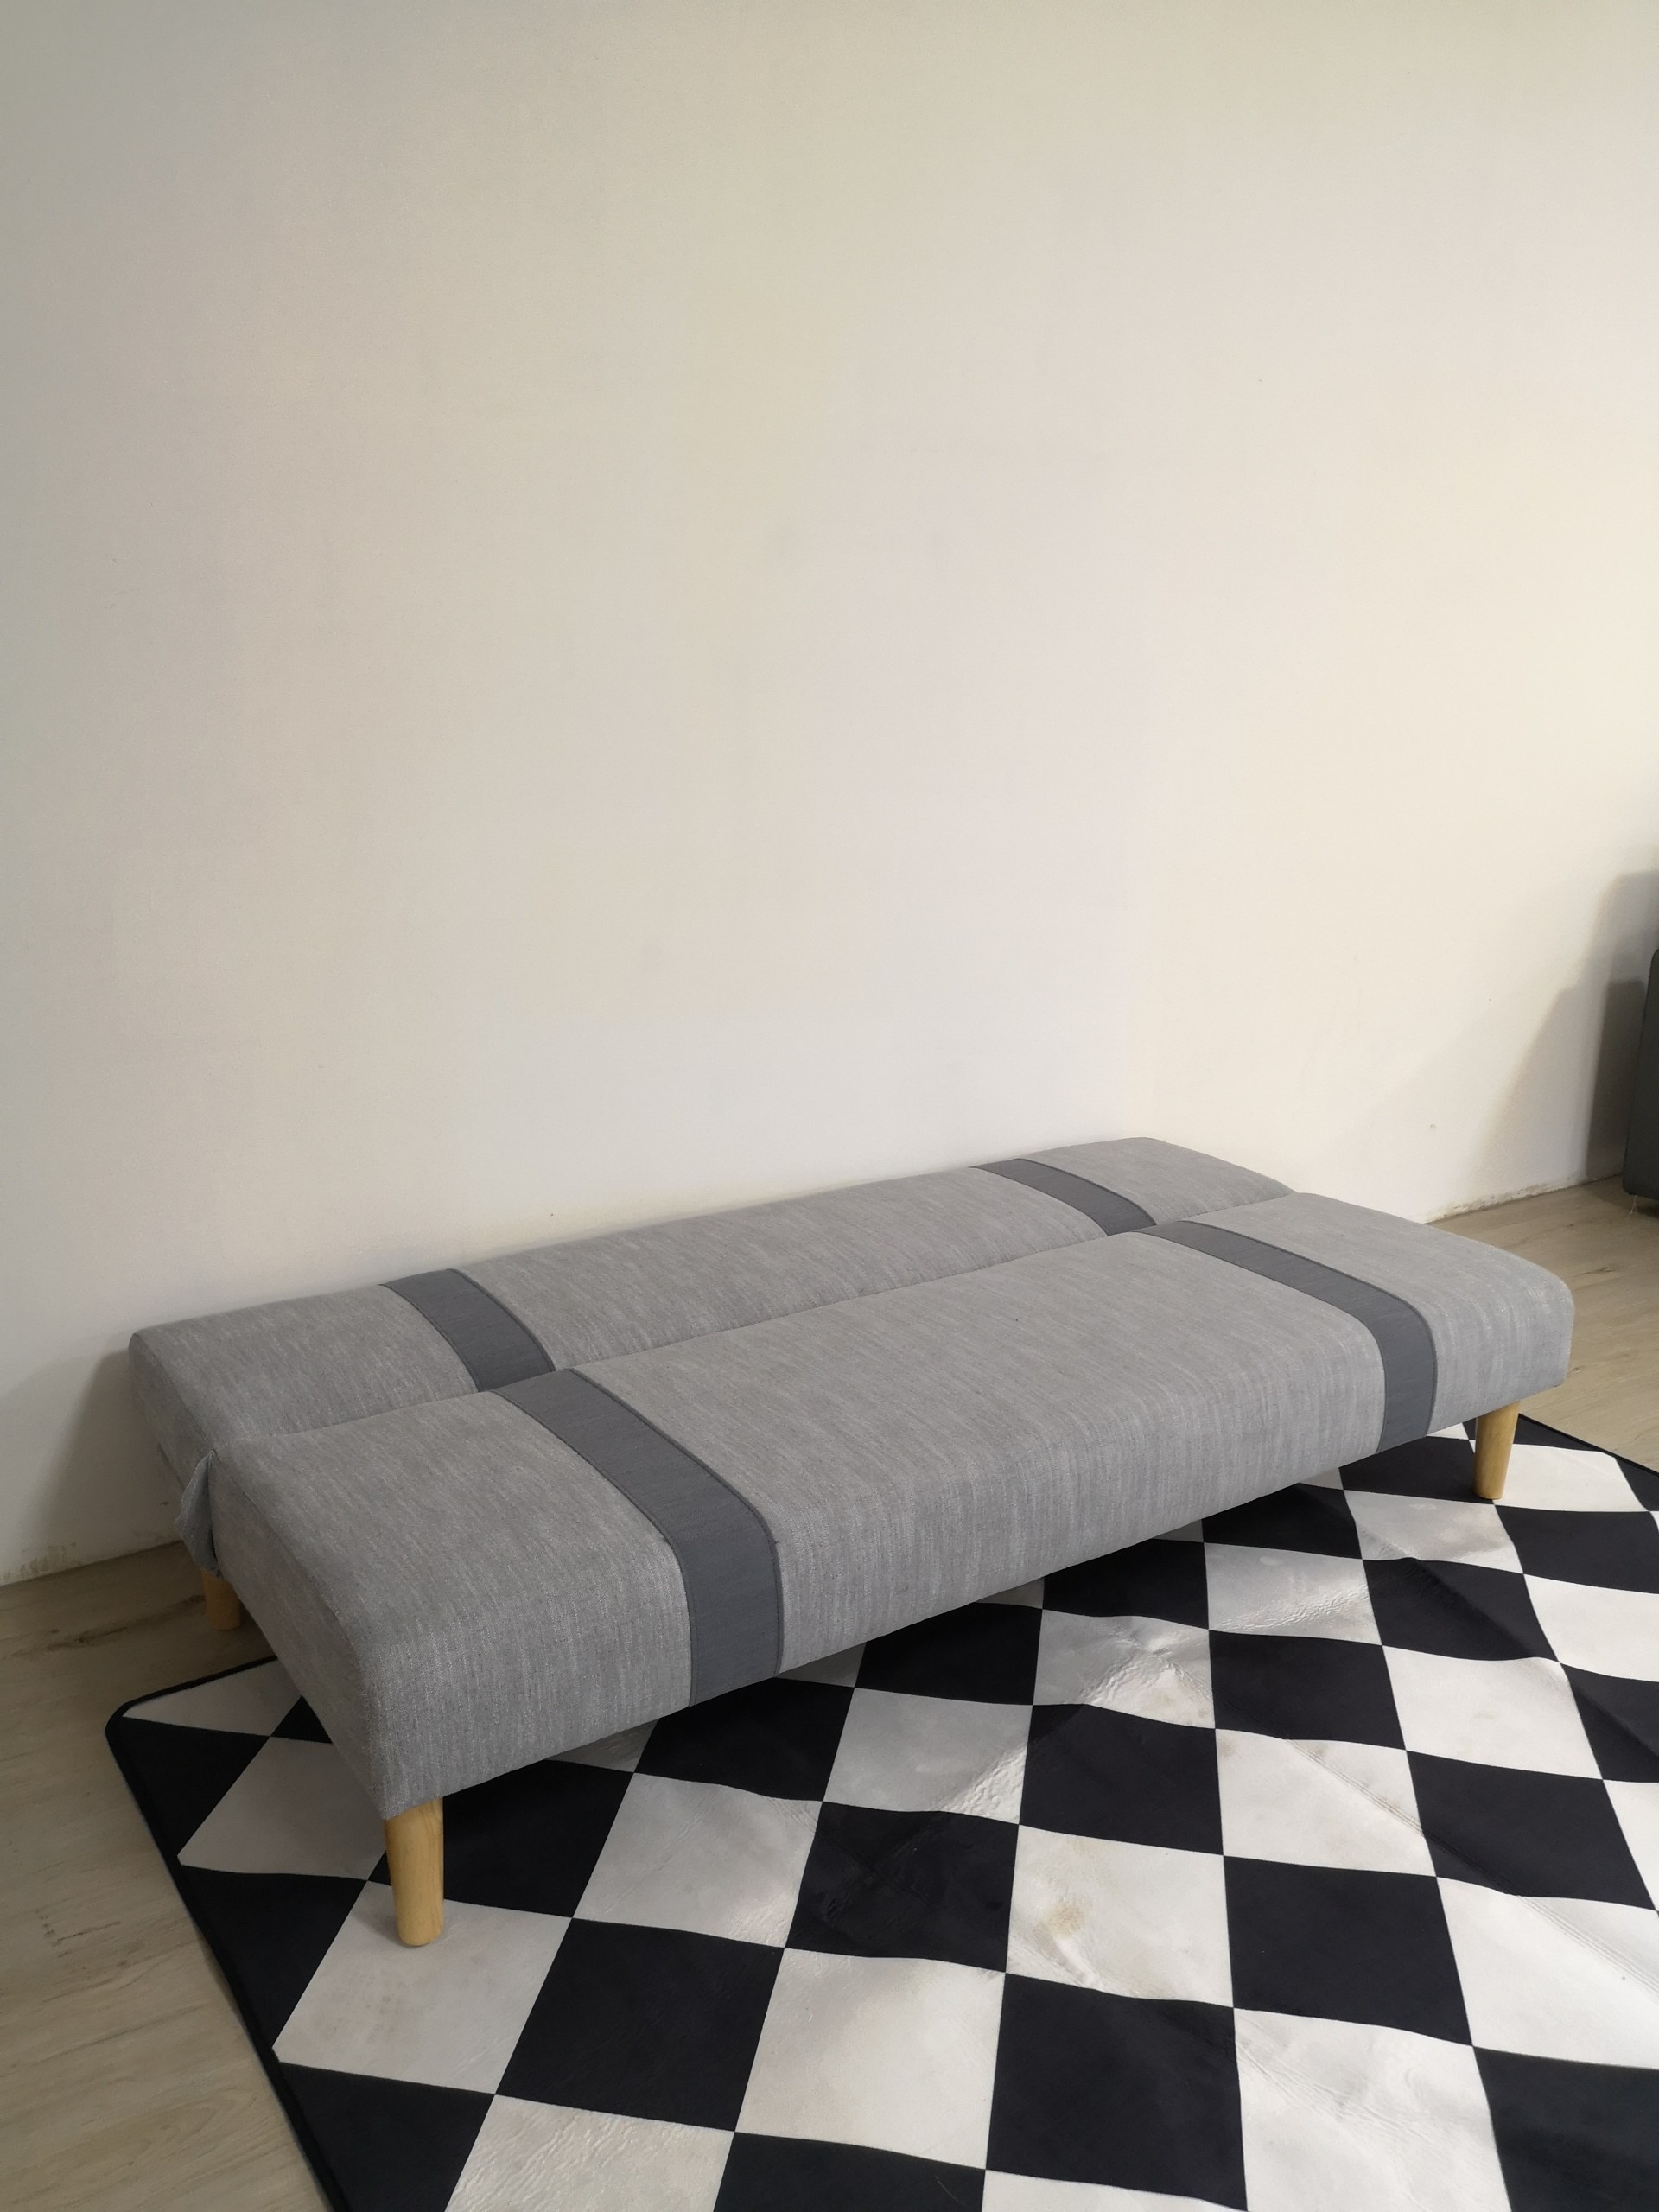 Sofa bed 3 trong 1 đa năng Juno sofa màu hồng, xám, xanh lá